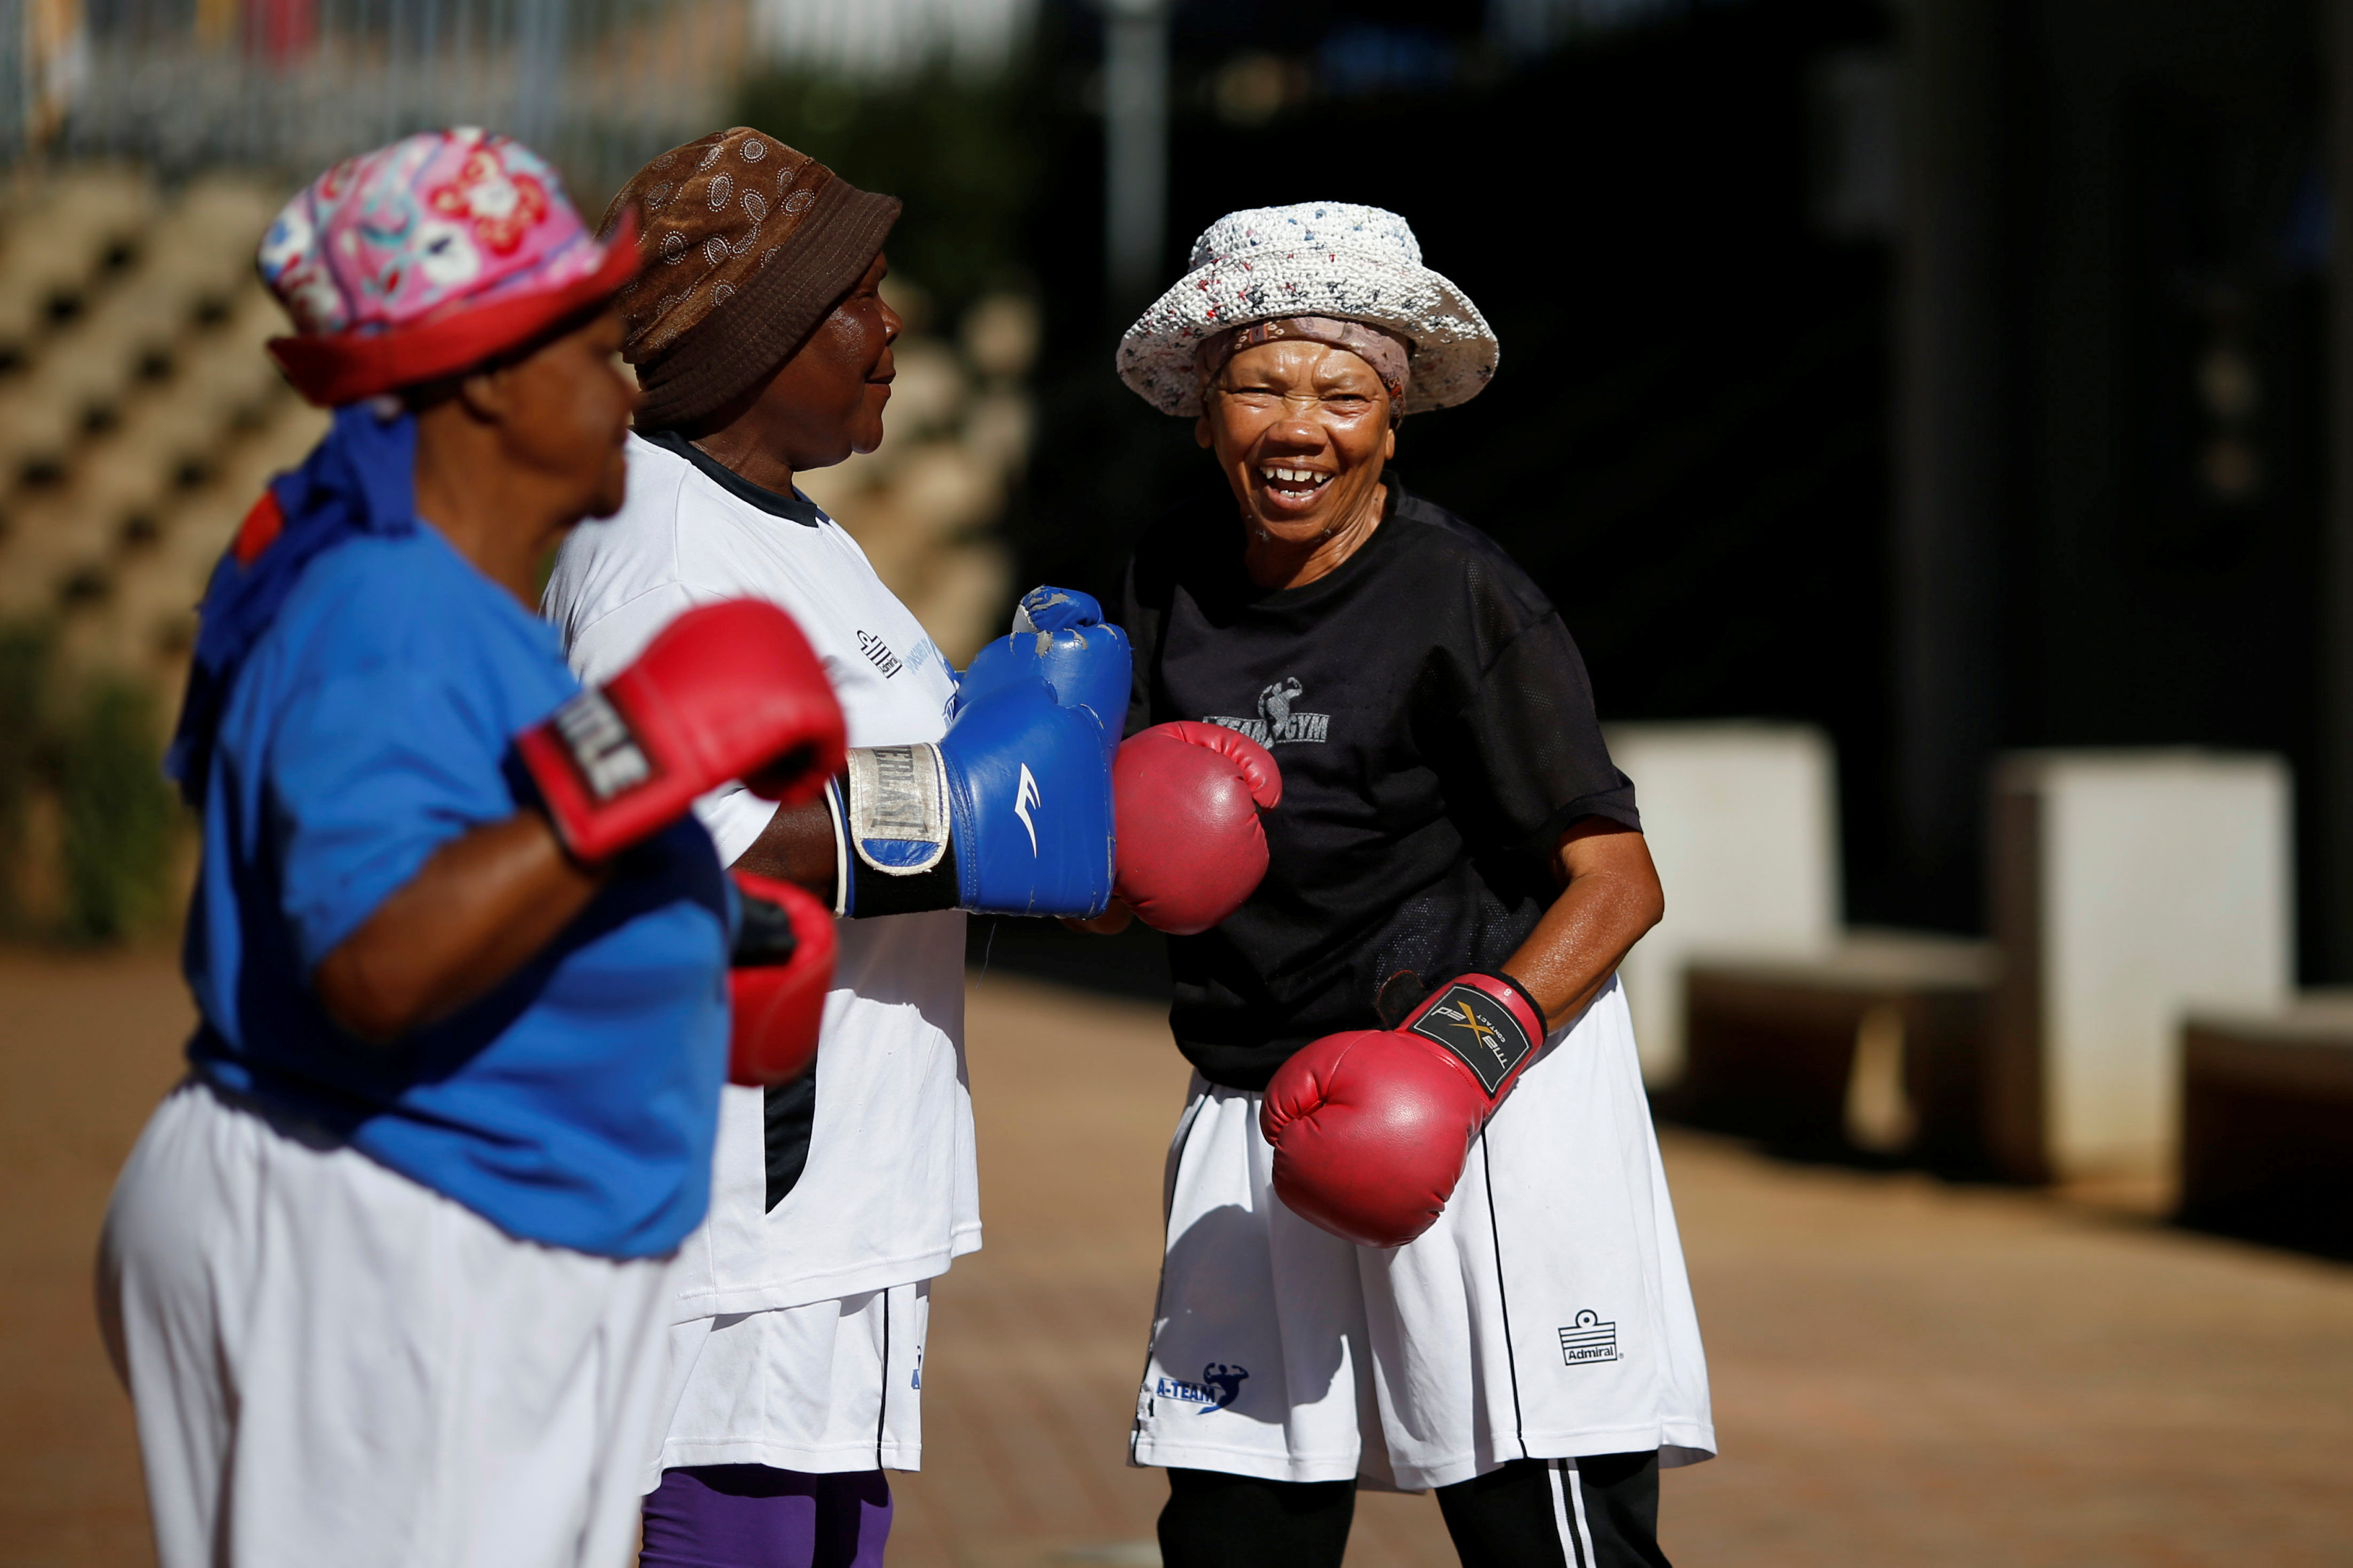 سيدات مسنات تحاربن الشيخوخة بممارسة الملاكمة